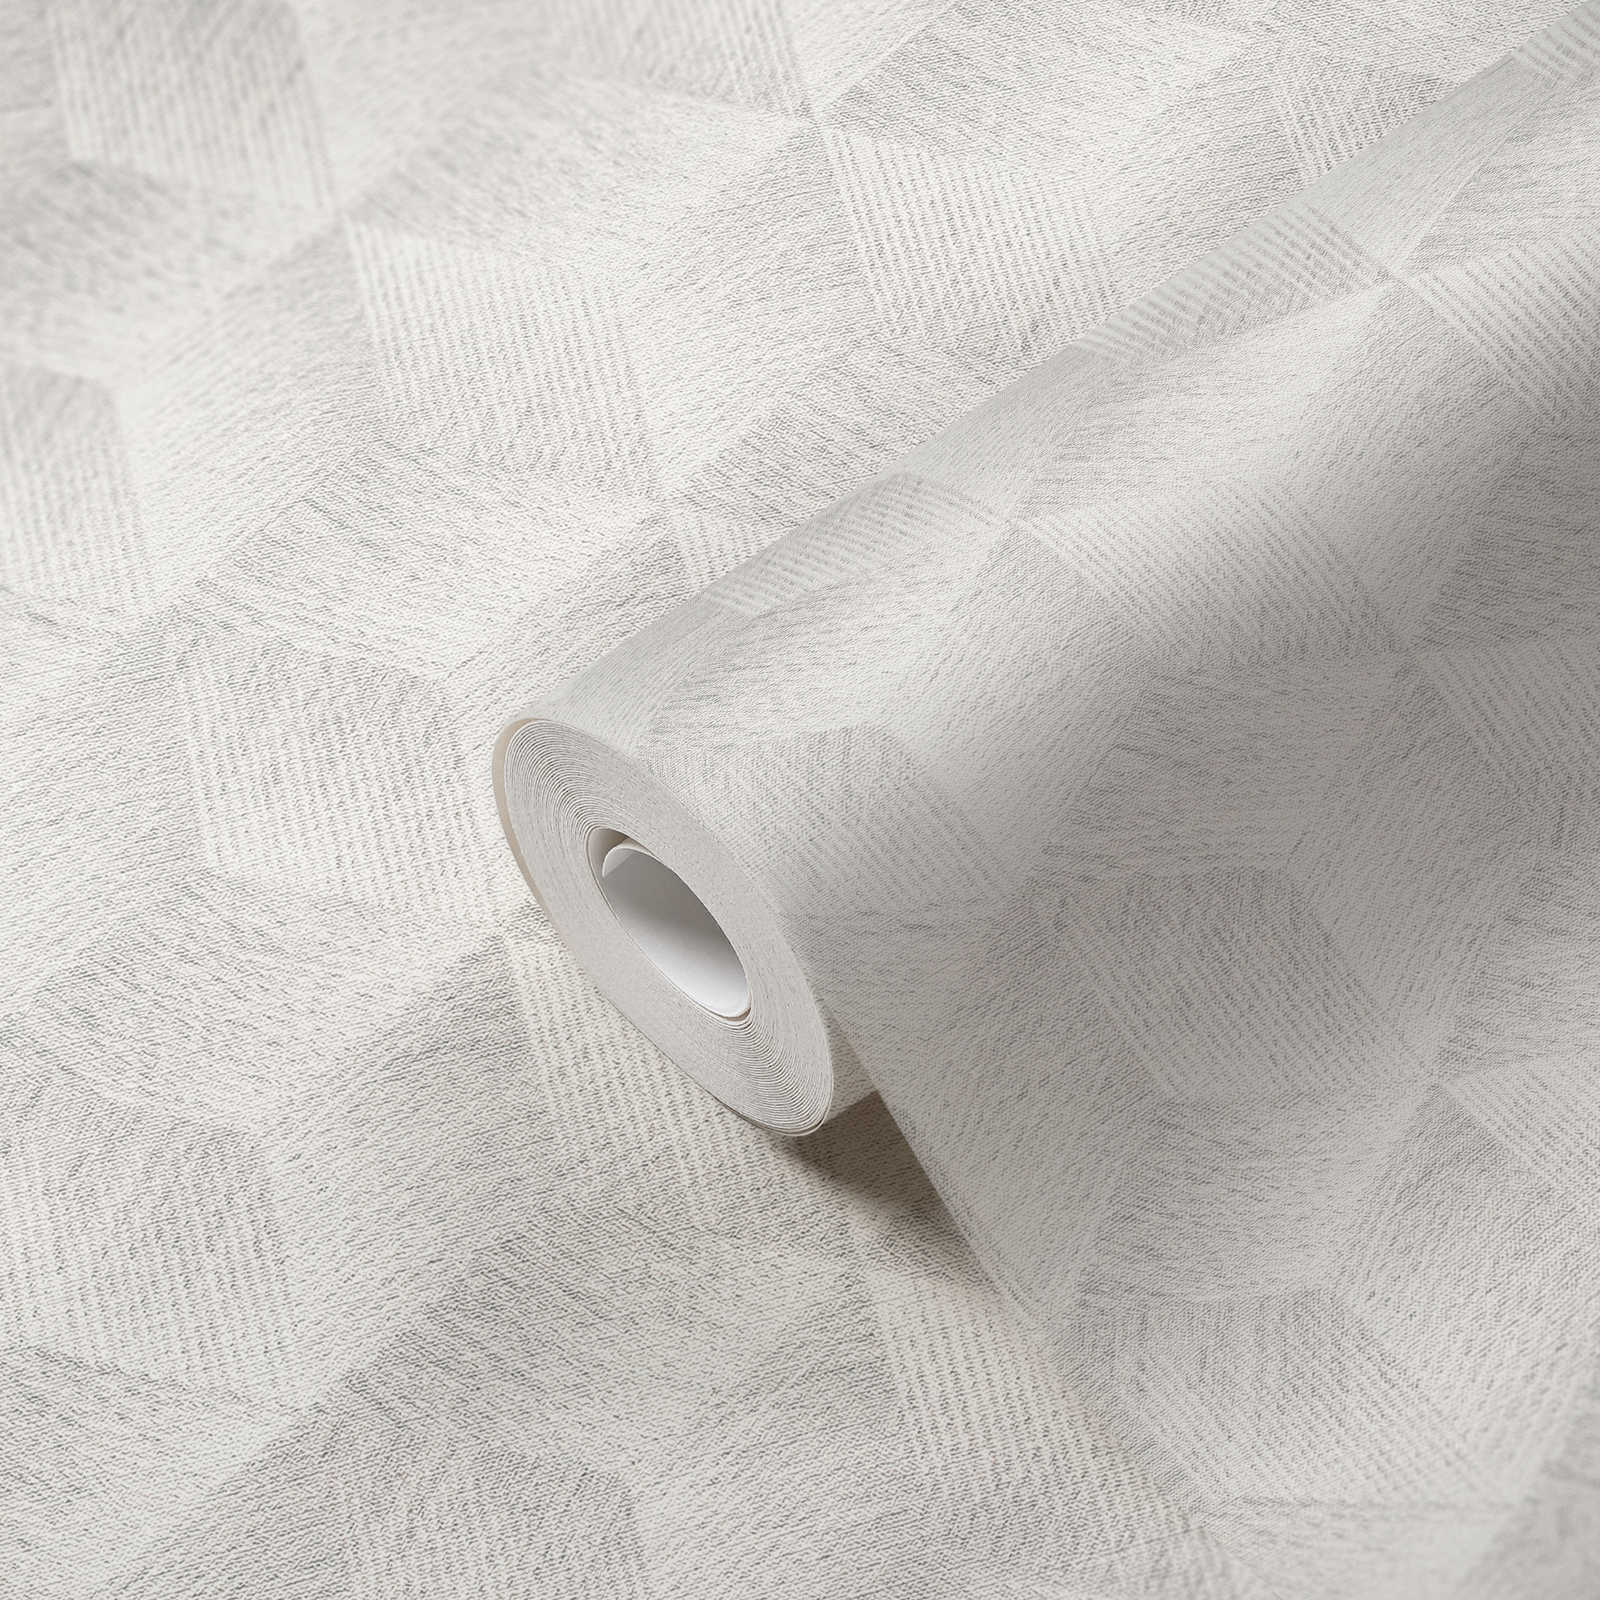             Papel pintado óptico 3D sin PVC con motivo cuadrado y efecto brillante - Gris, Blanco
        